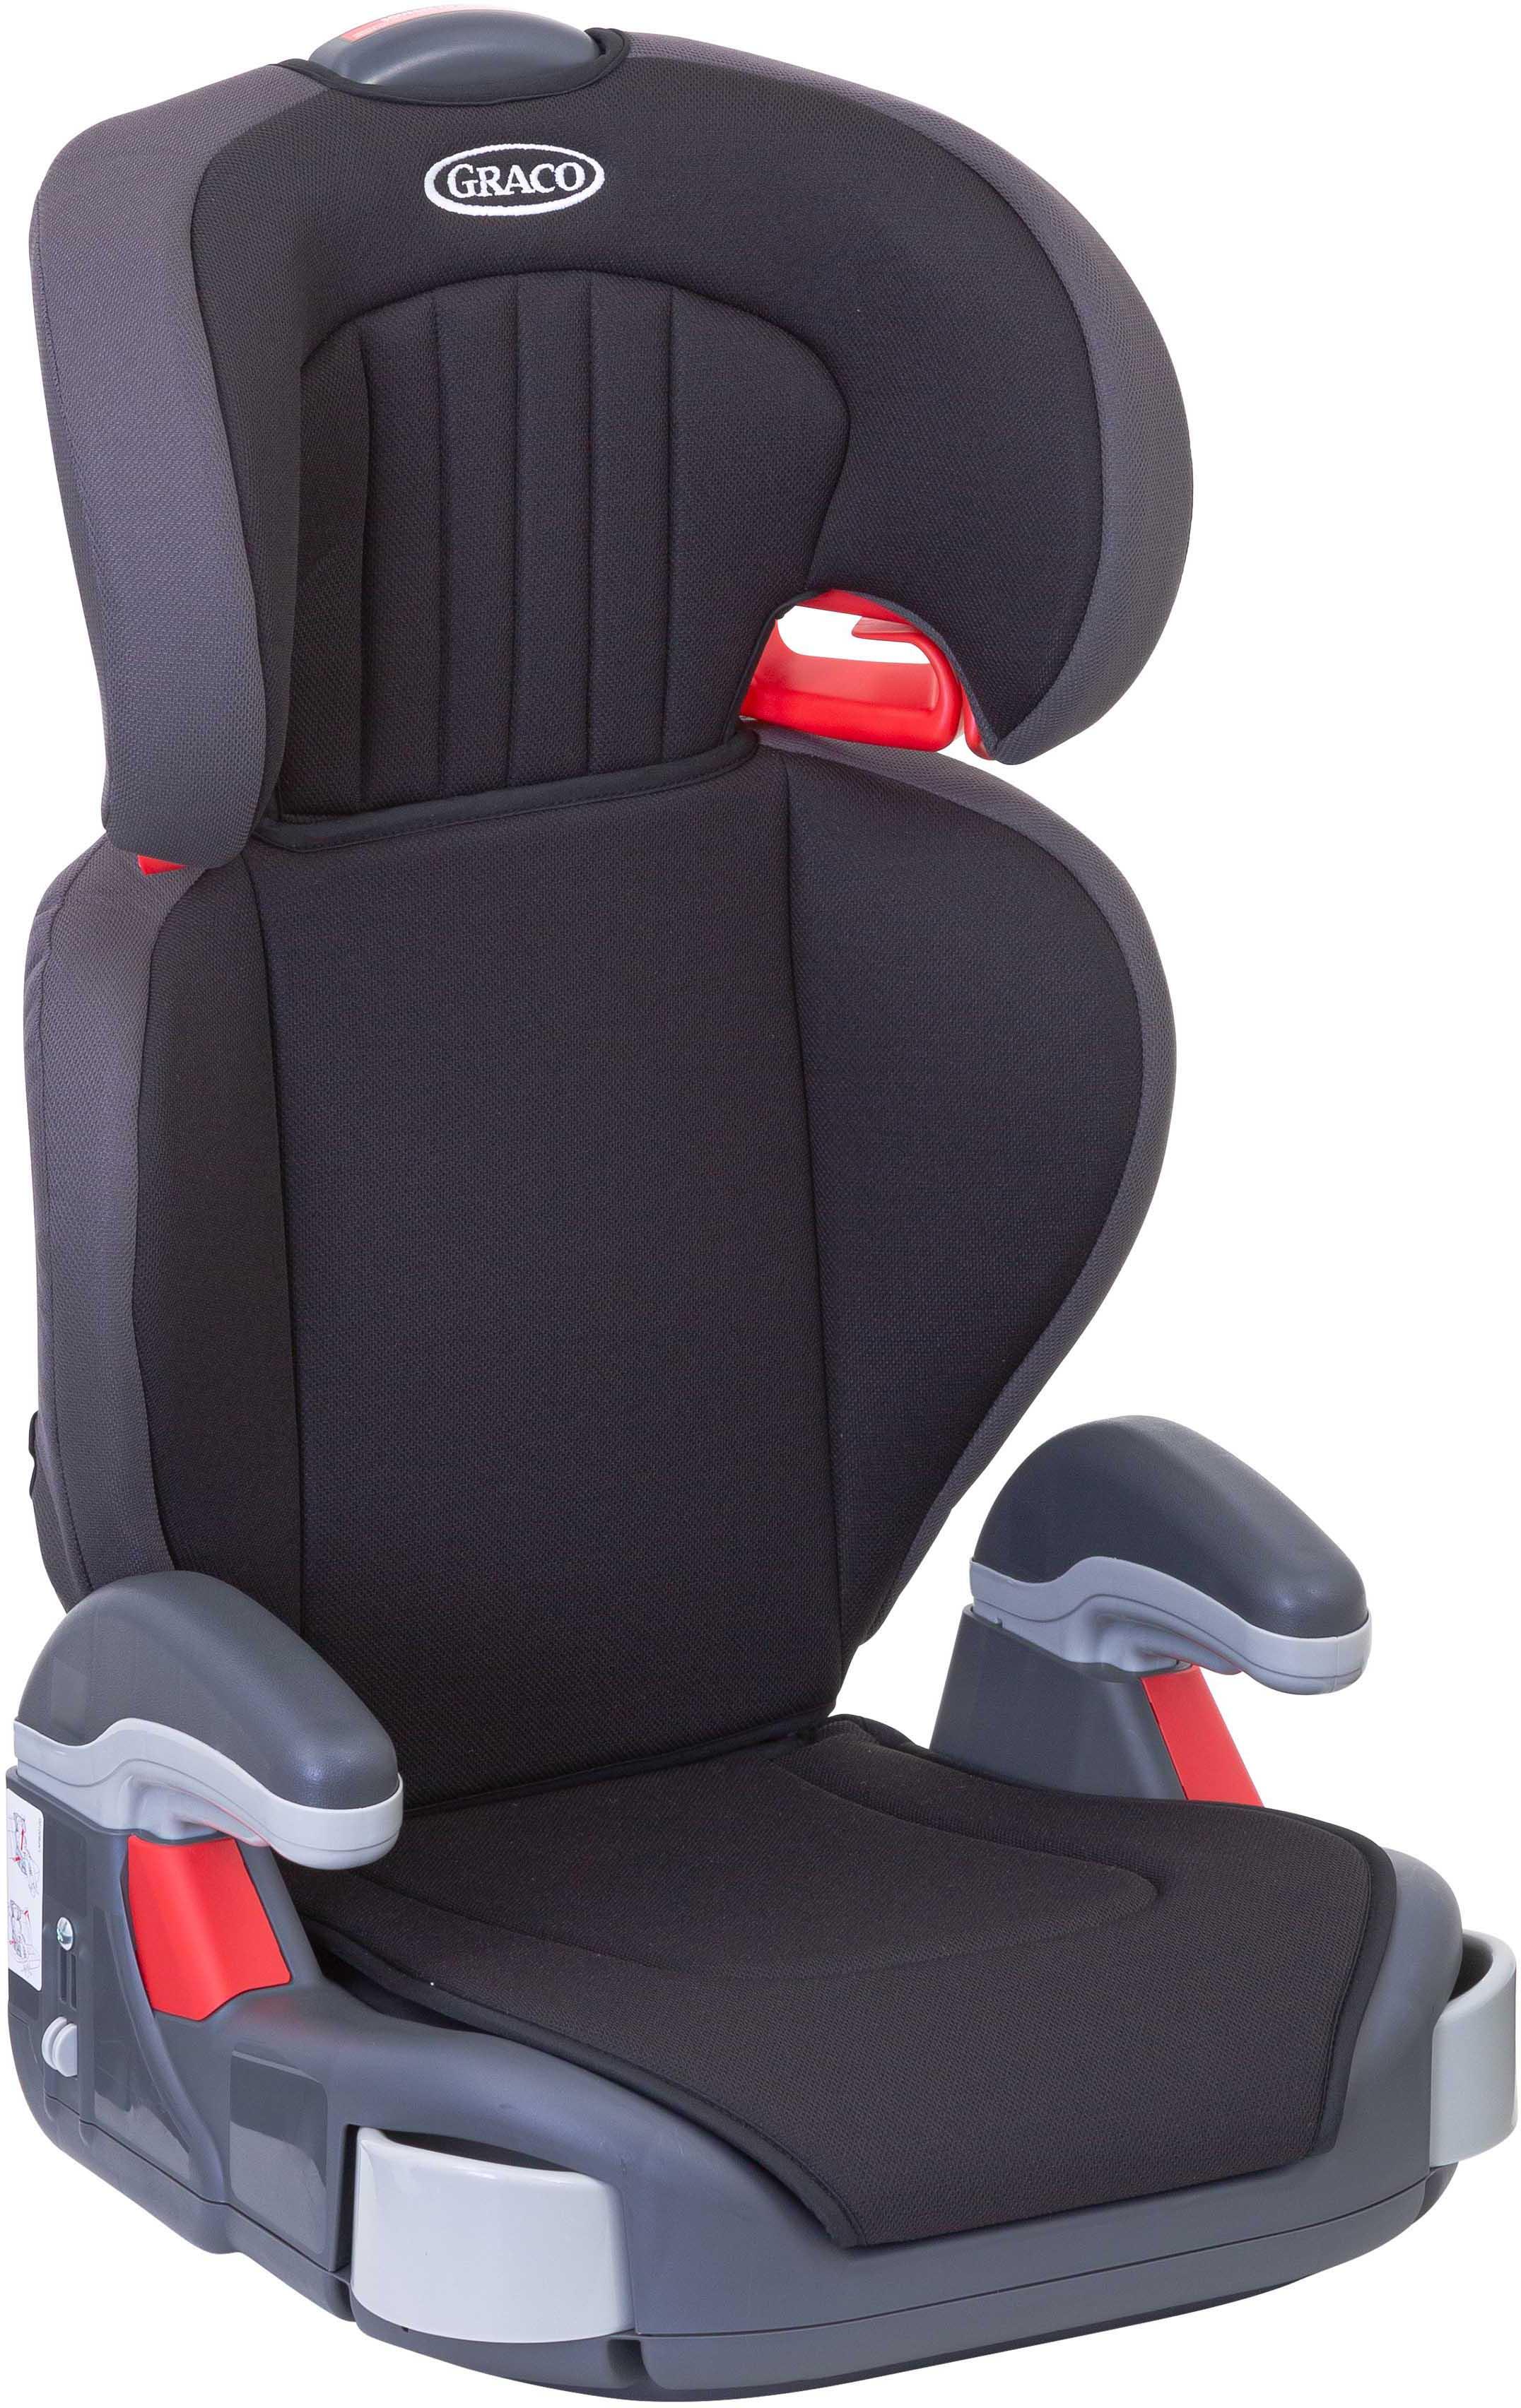 Graco Junior Maxi Group 2/3 Child Car Seat - Black